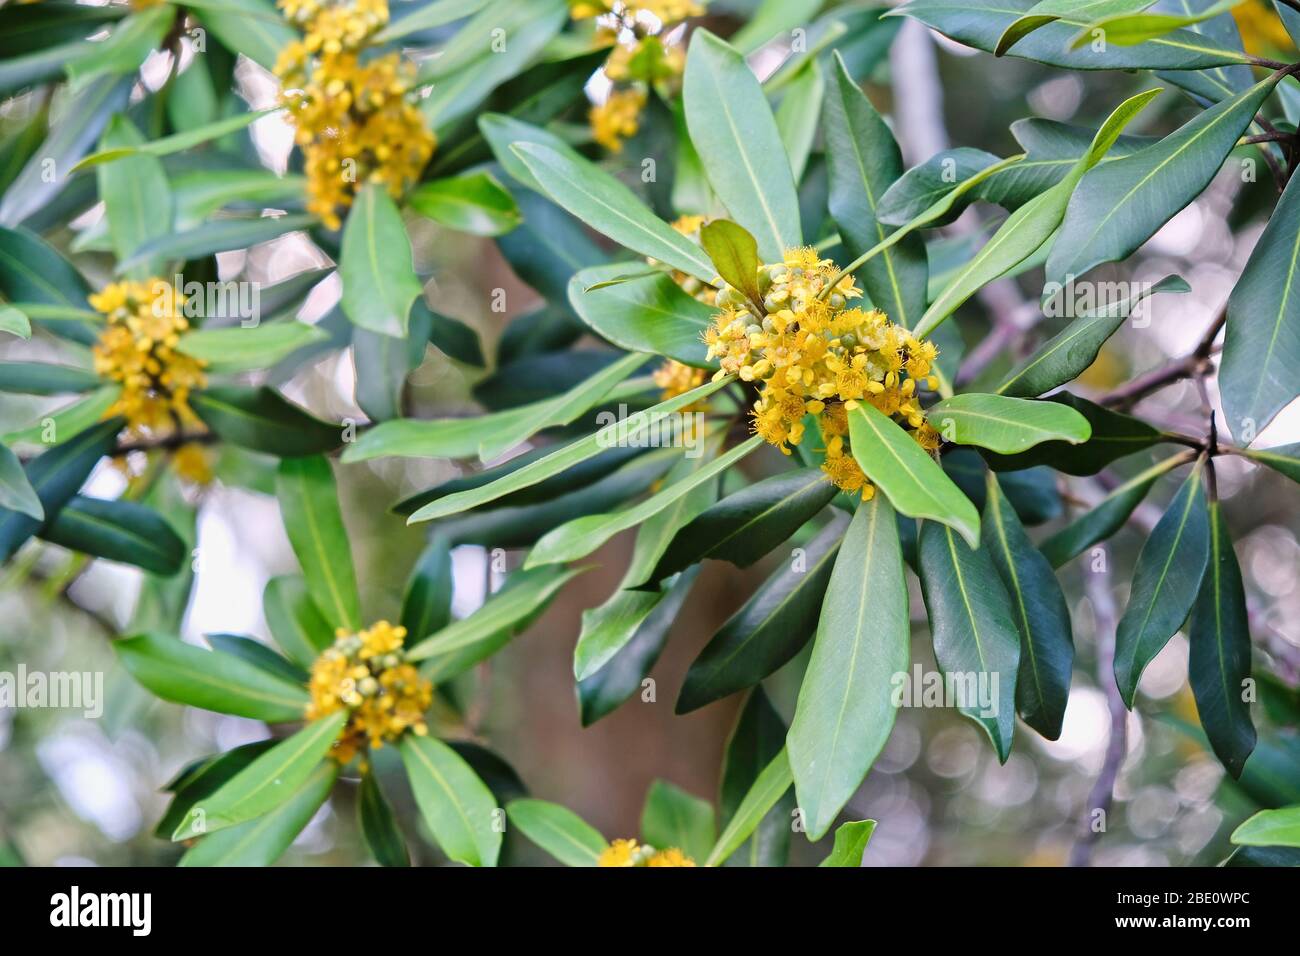 Wasser Gummi Blüten und Blätter in Nahaufnahme. Eine einheimische australische Pflanze. Stockfoto